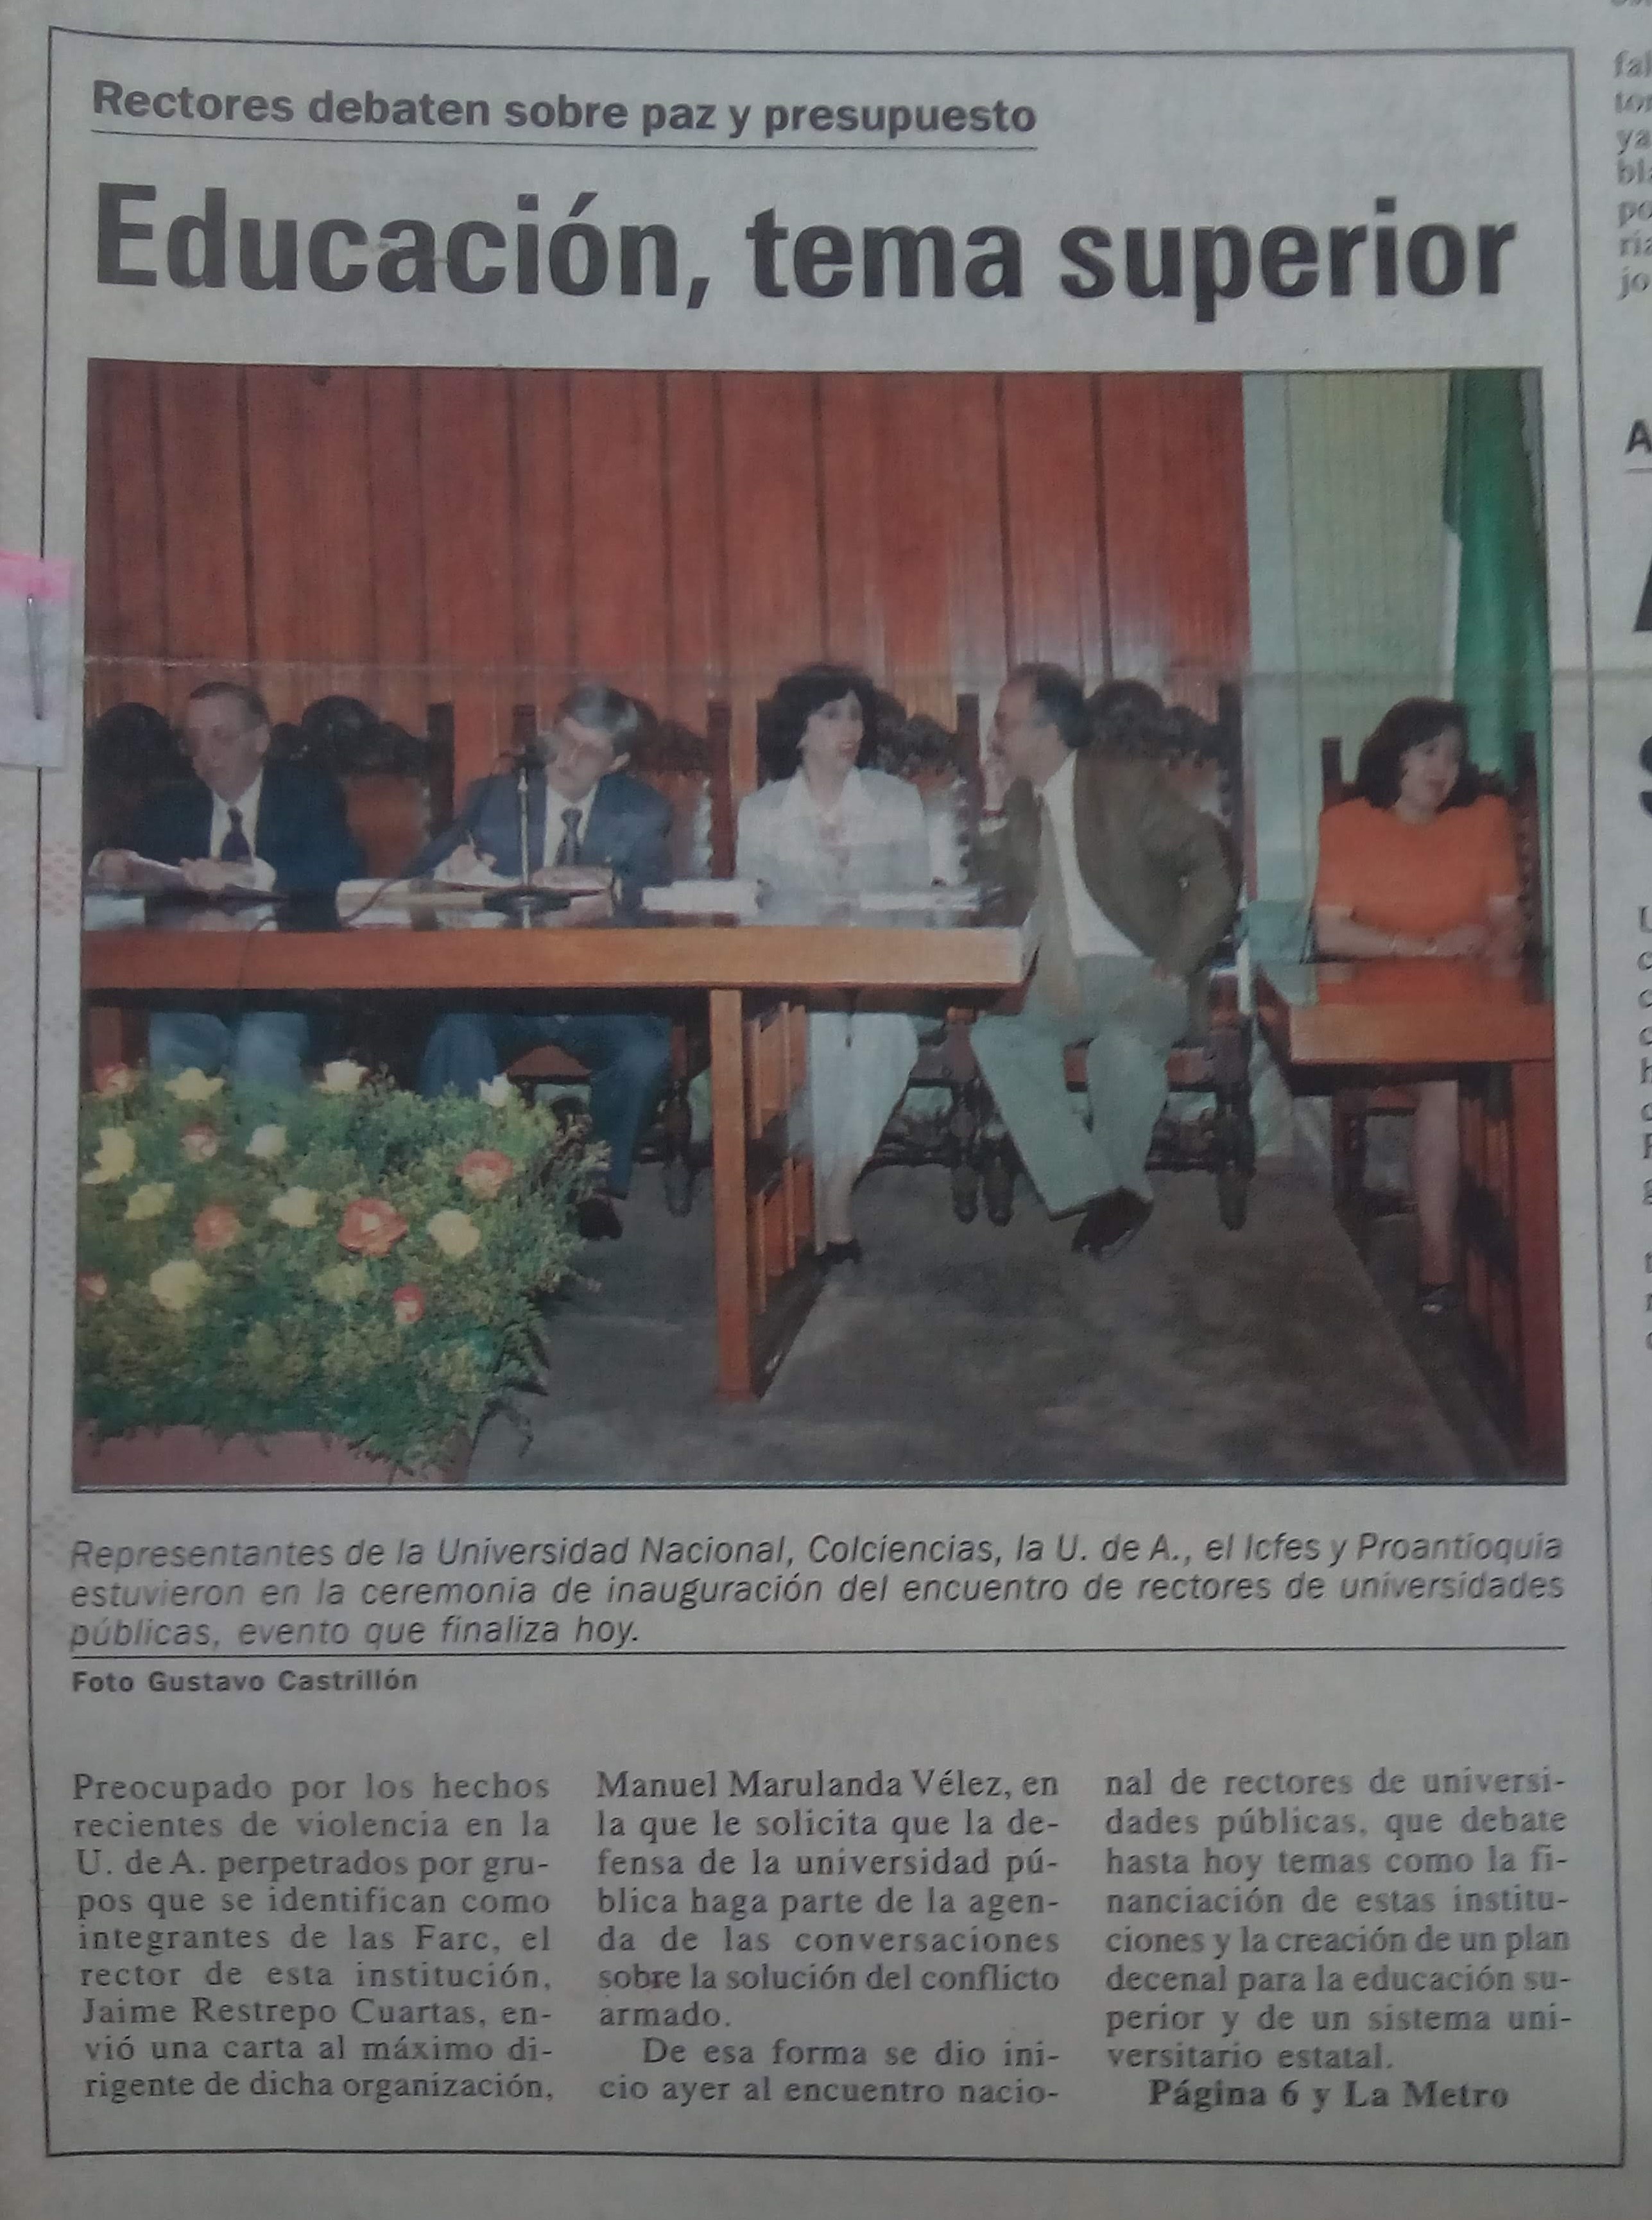 Fotografía tomada de la edición del 28 de noviembre de 1998 del periódico El Mundo.